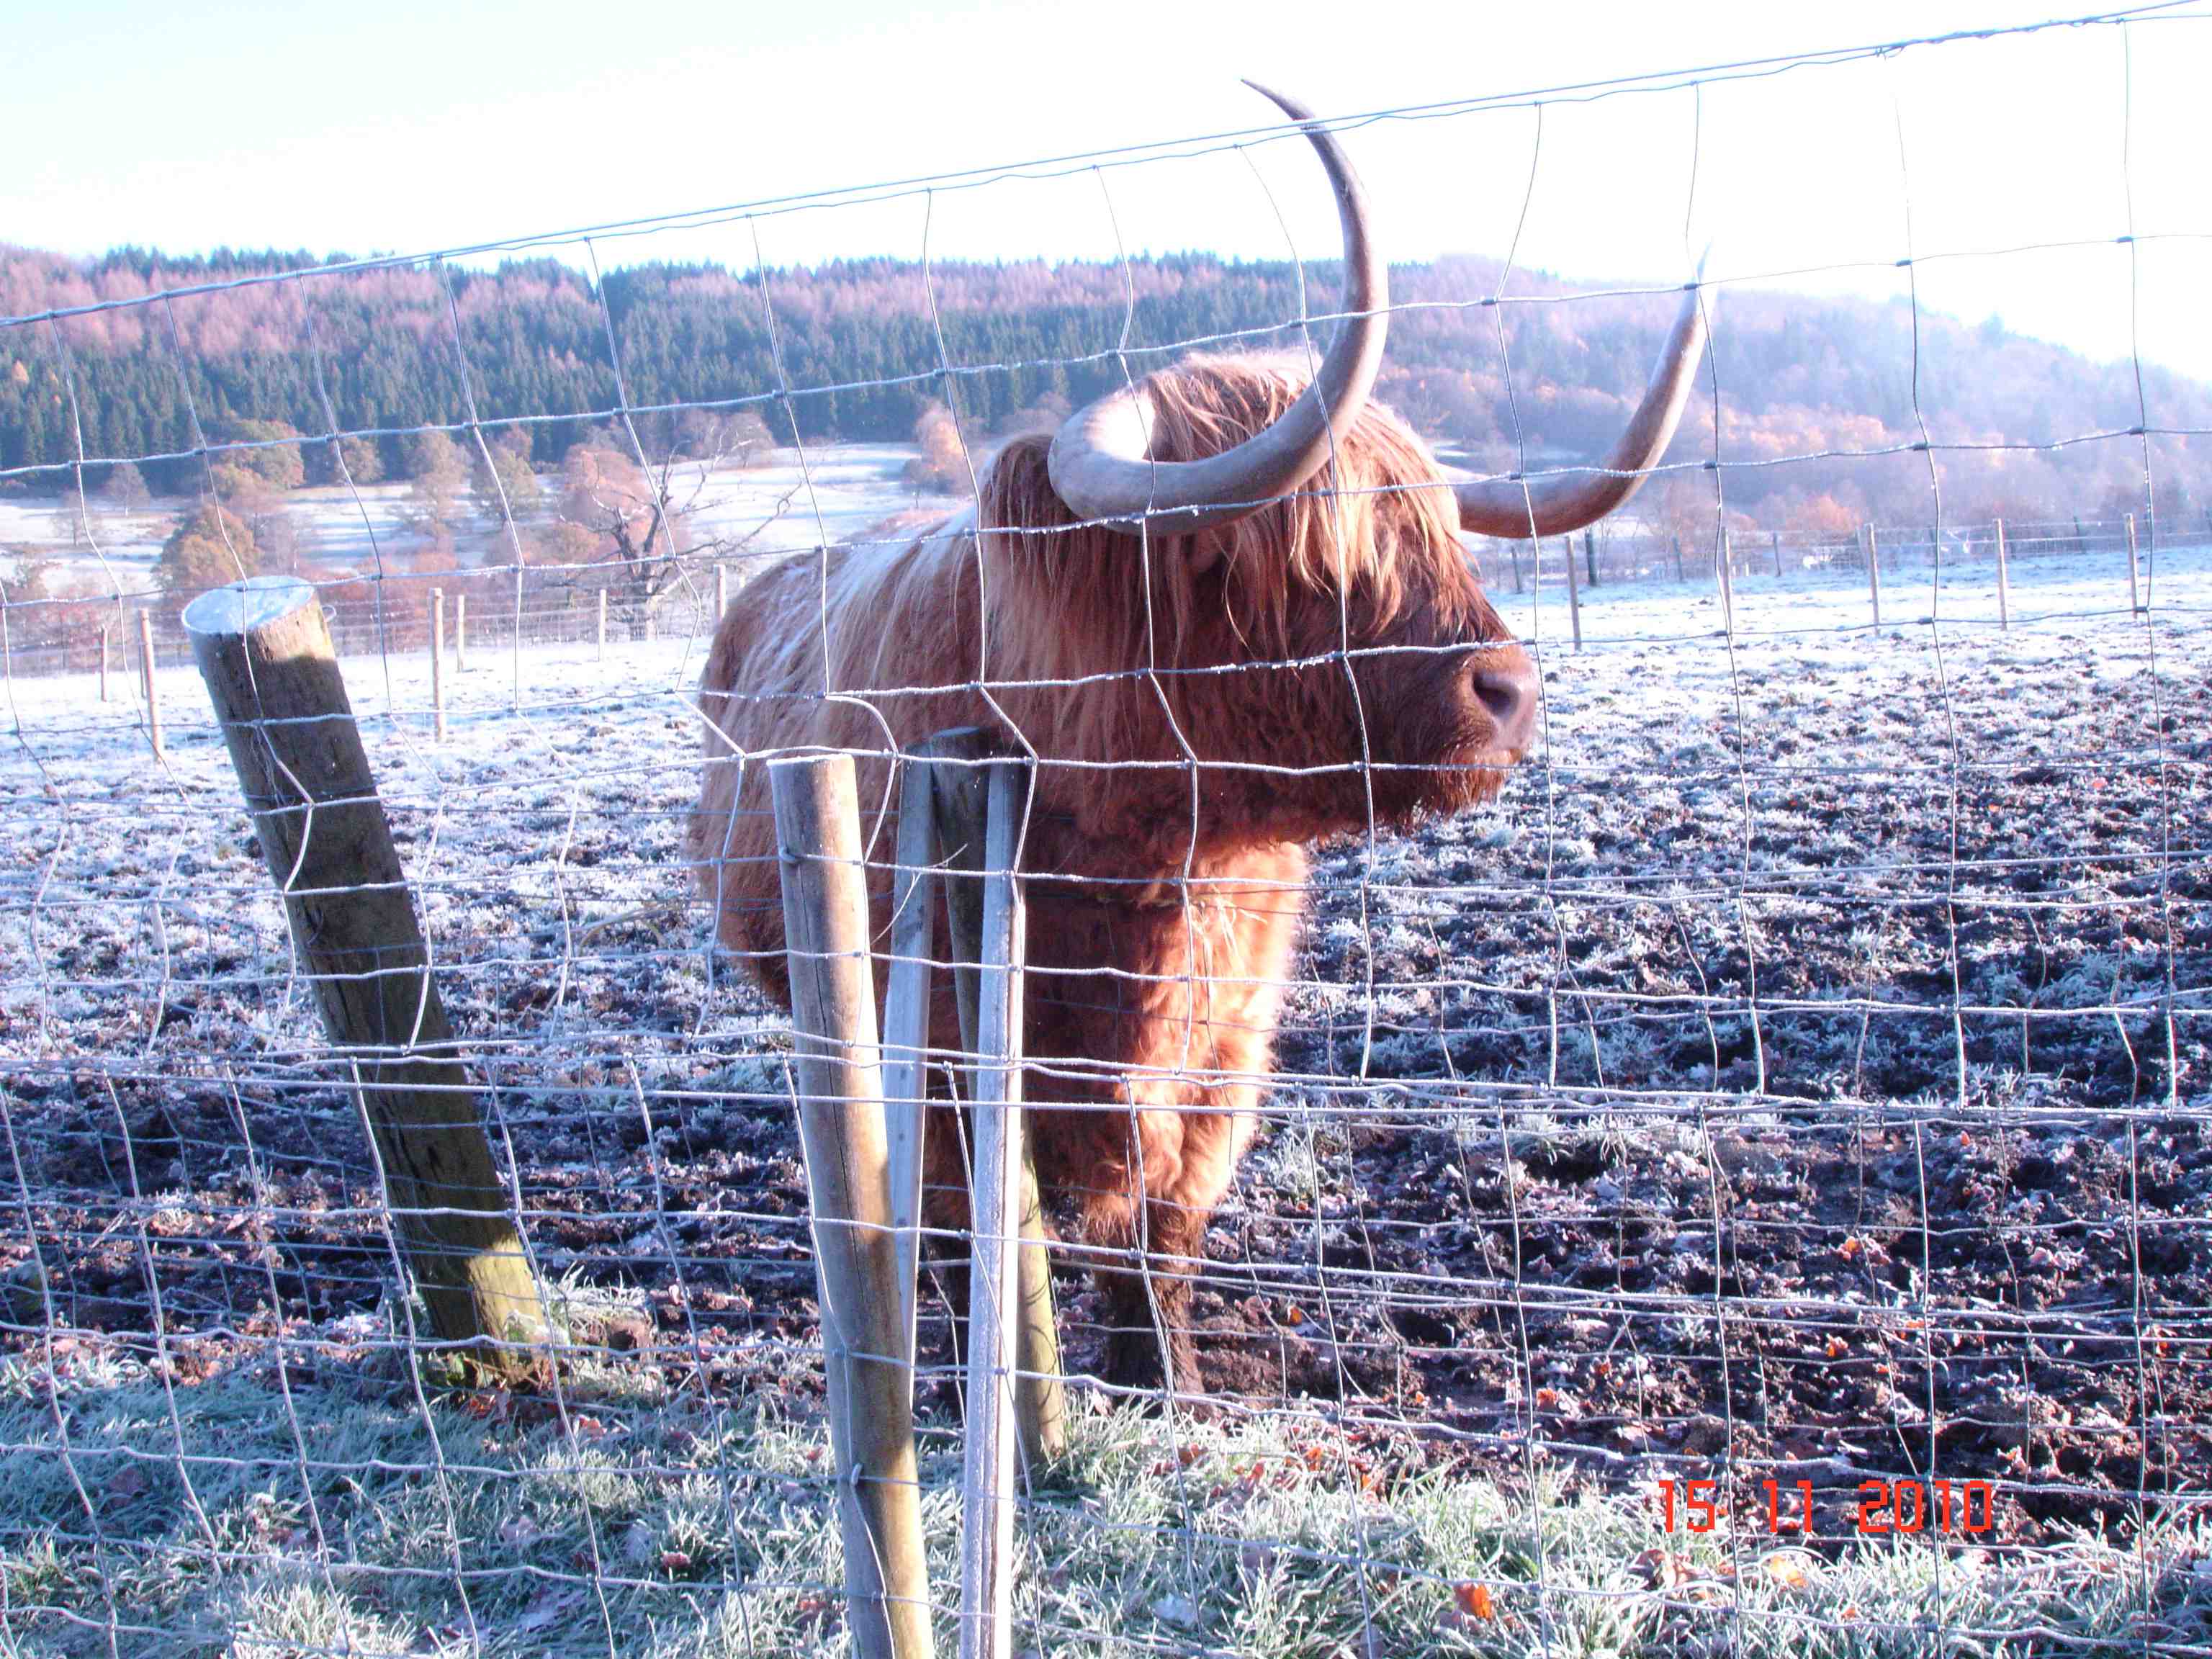 Шотландский горный бык Хэмиш - Hamish, a highland cow